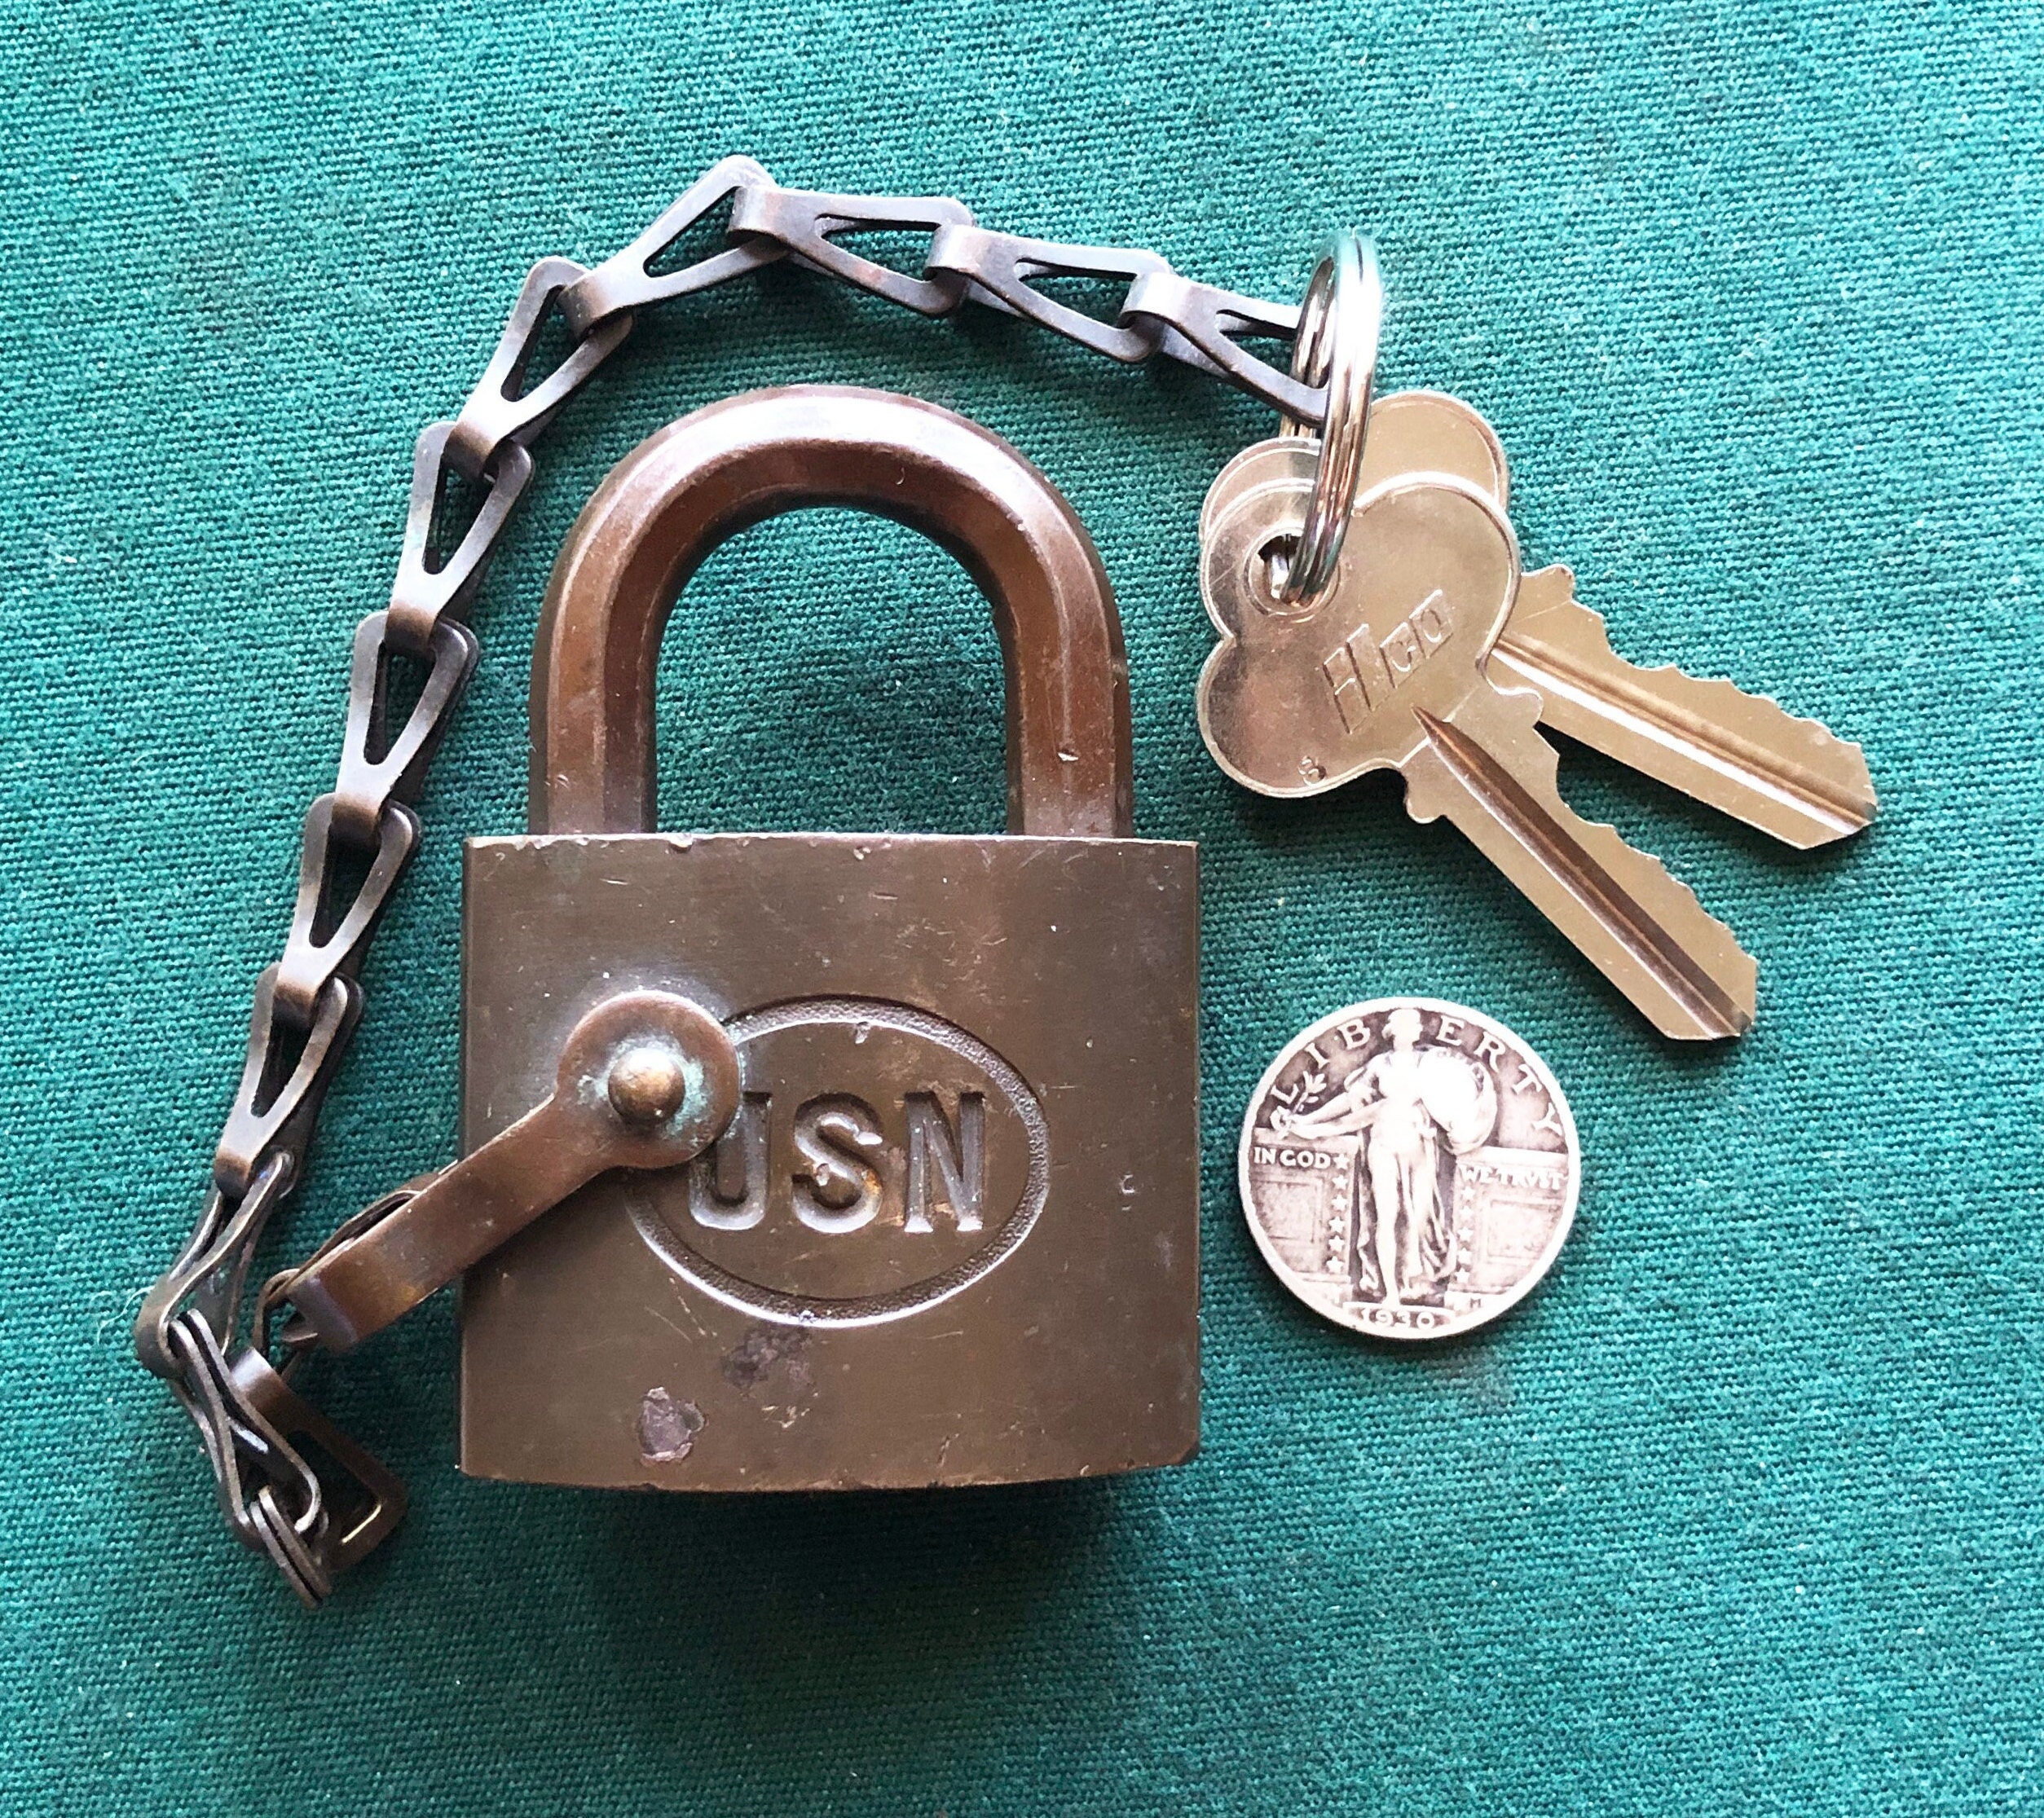 Vintage US Navy Lock with Key (Item Number 0014)